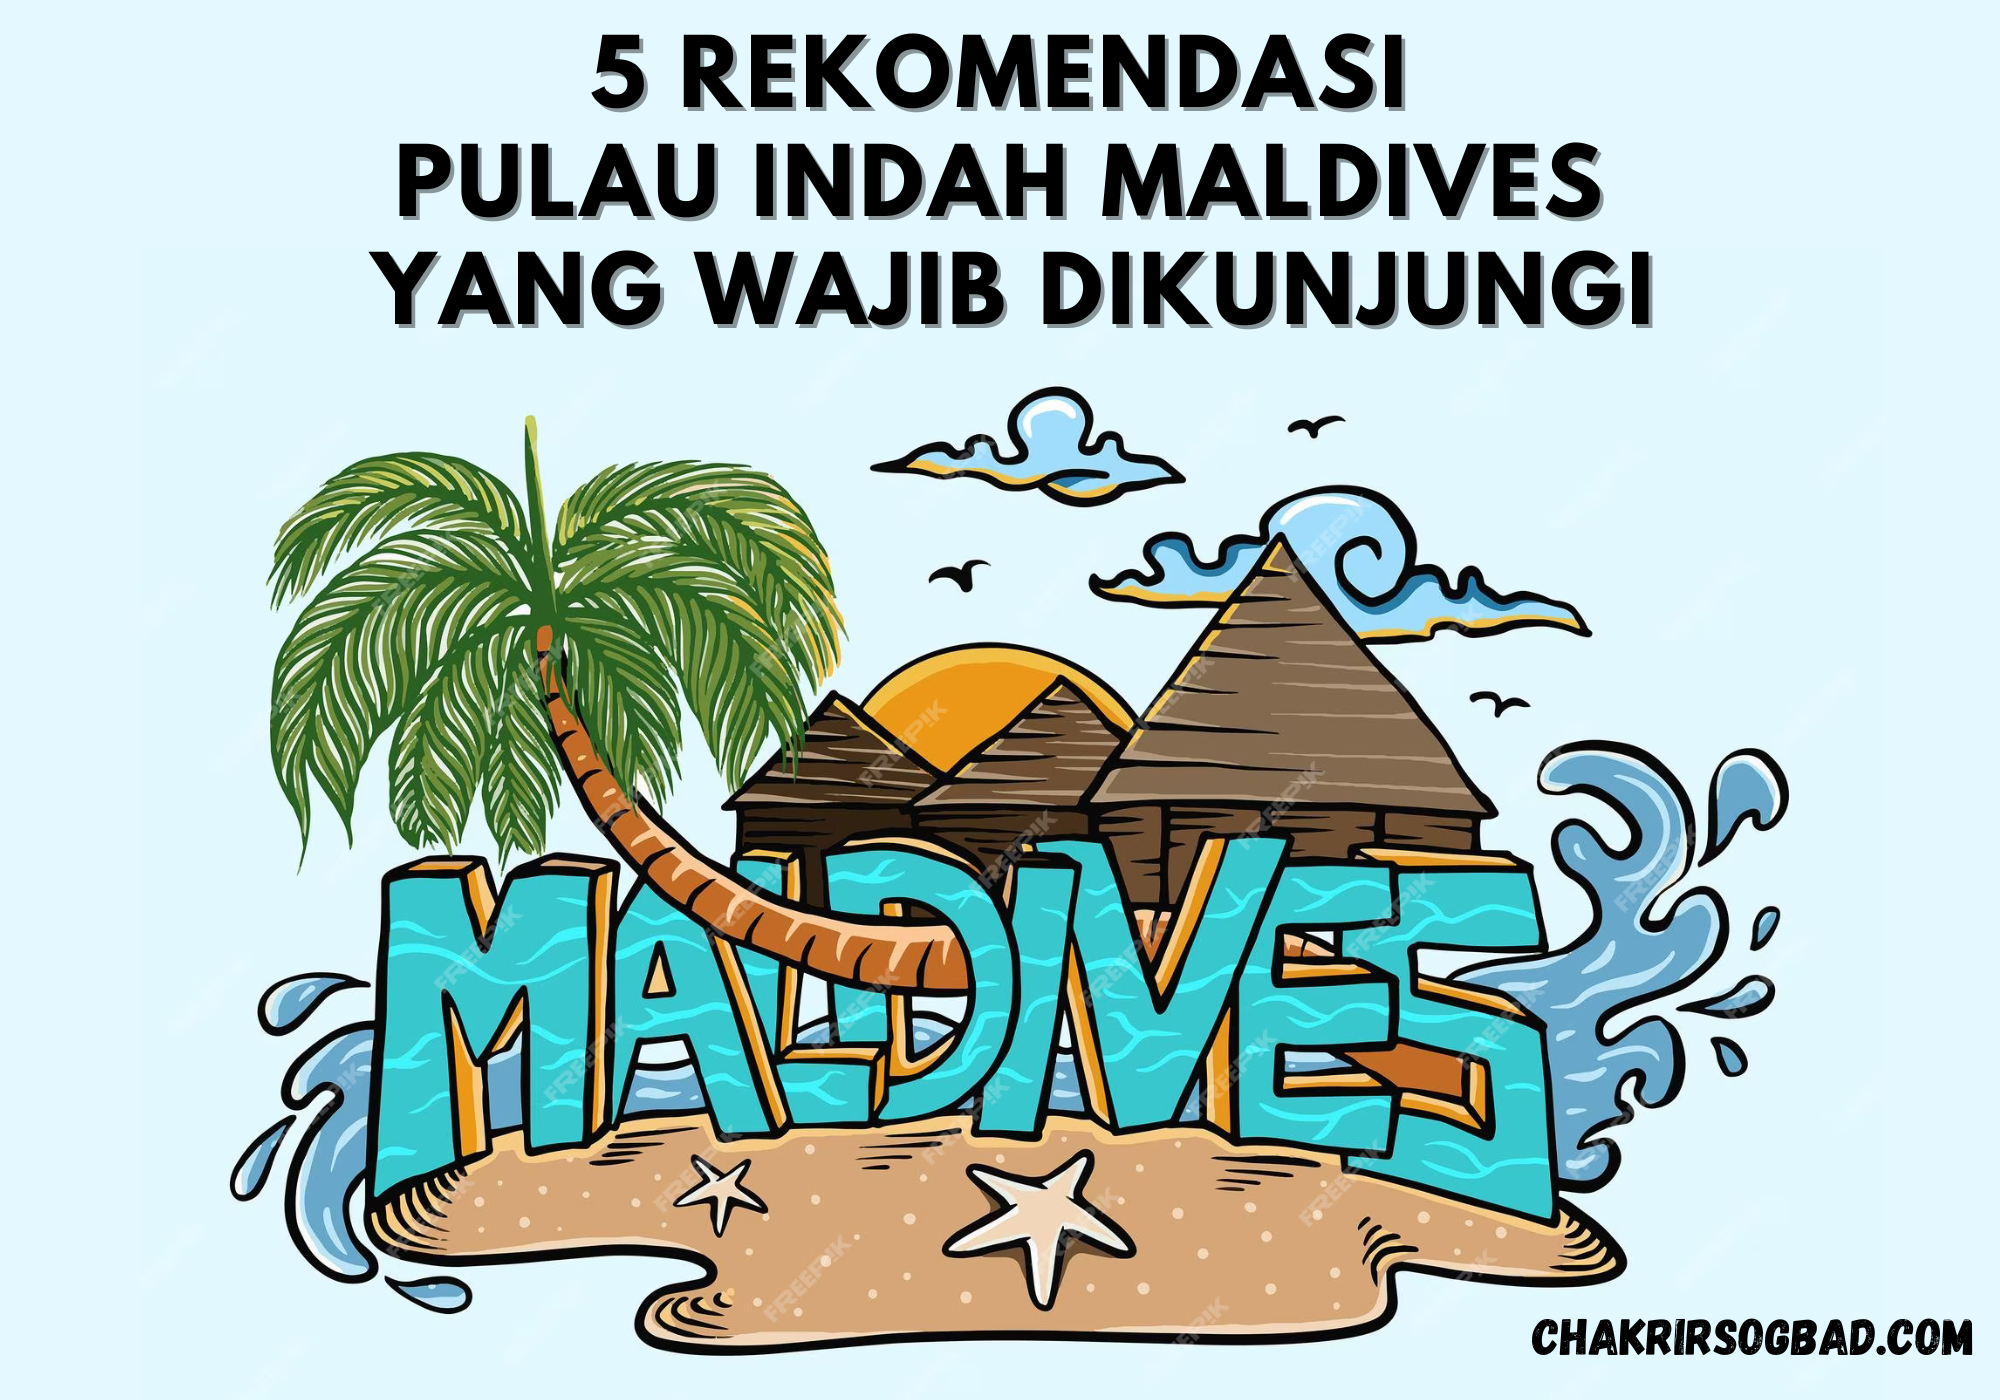 5 Rekomendasi Pulau Indah Maldives Yang Wajib Dikunjungi